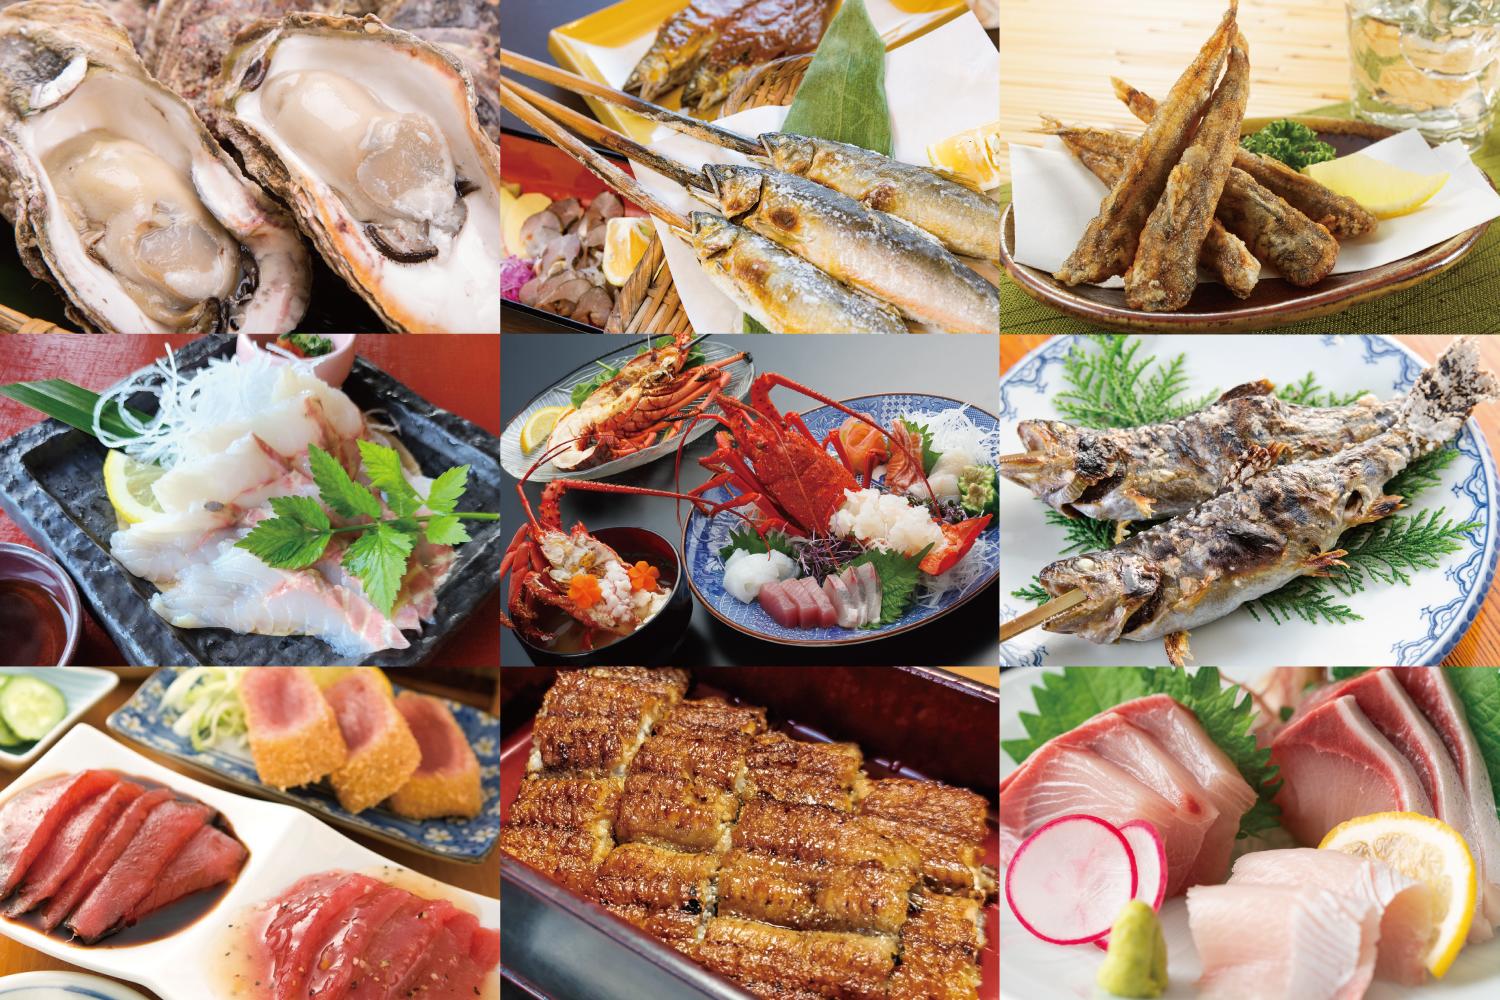 伊勢えびやカツオ、牡蠣、川魚など宮崎県の美味しい魚介類-1